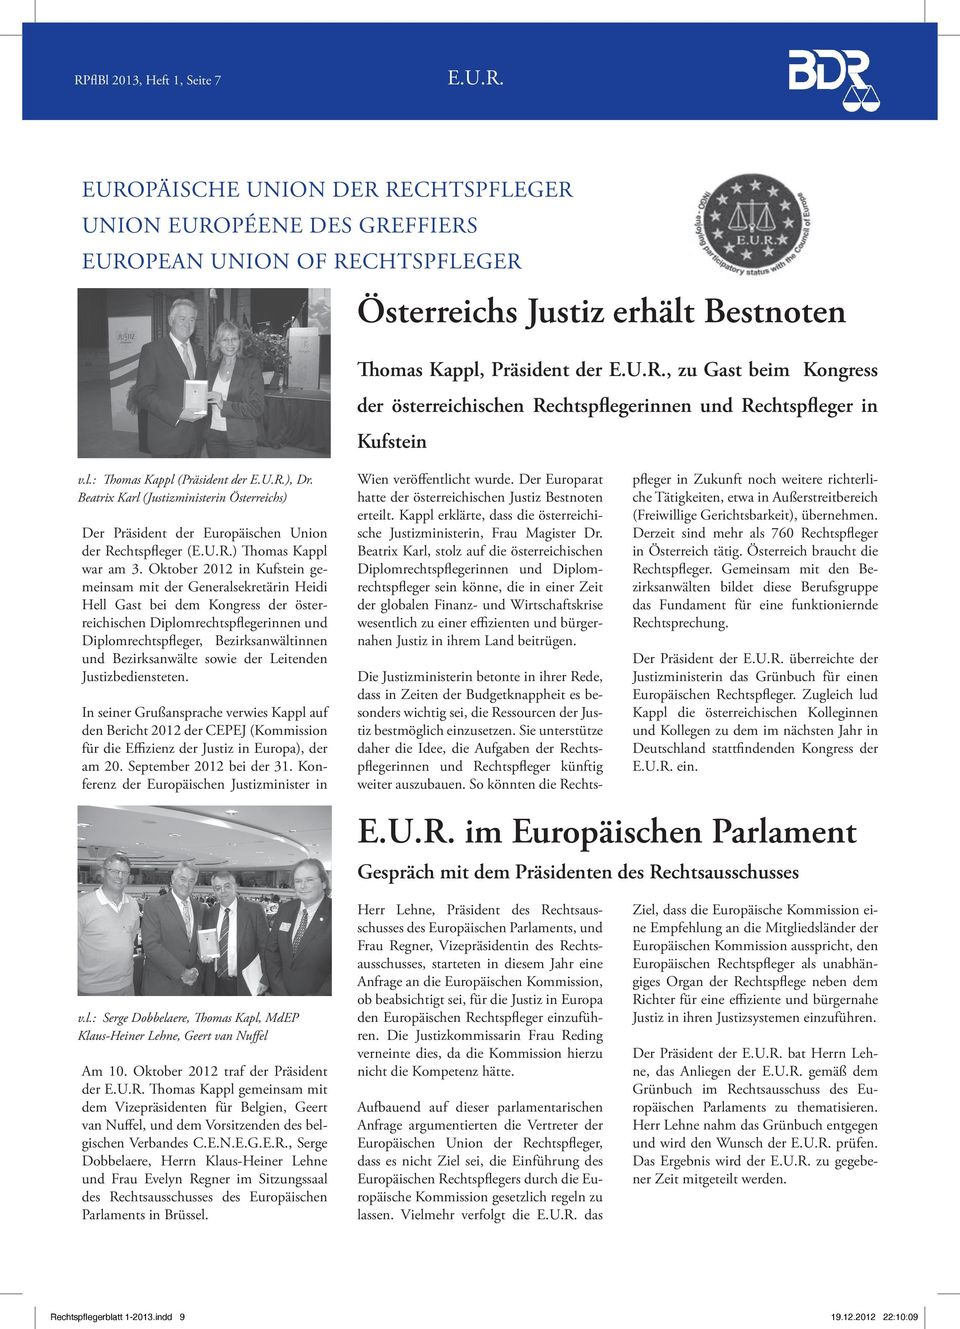 Beatrix Karl (Justizministerin Österreichs) Der Präsident der Europäischen Union der Rechtspfleger (E.U.R.) Thomas Kappl war am 3.